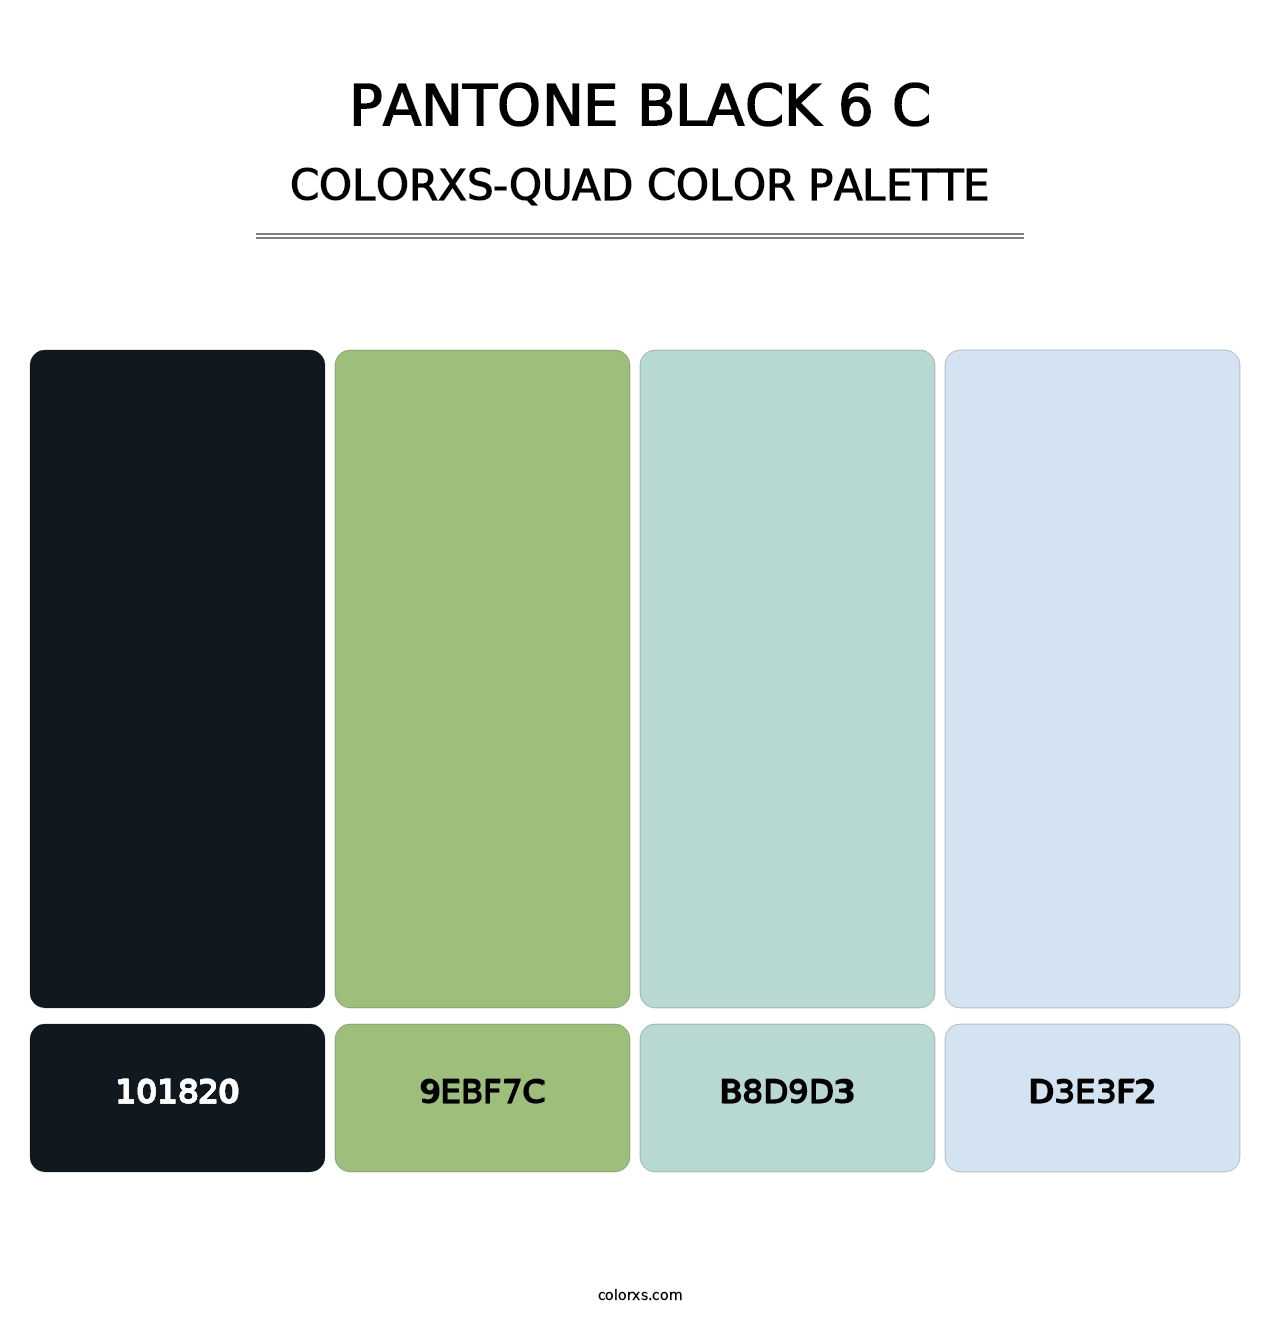 PANTONE Black 6 C - Colorxs Quad Palette